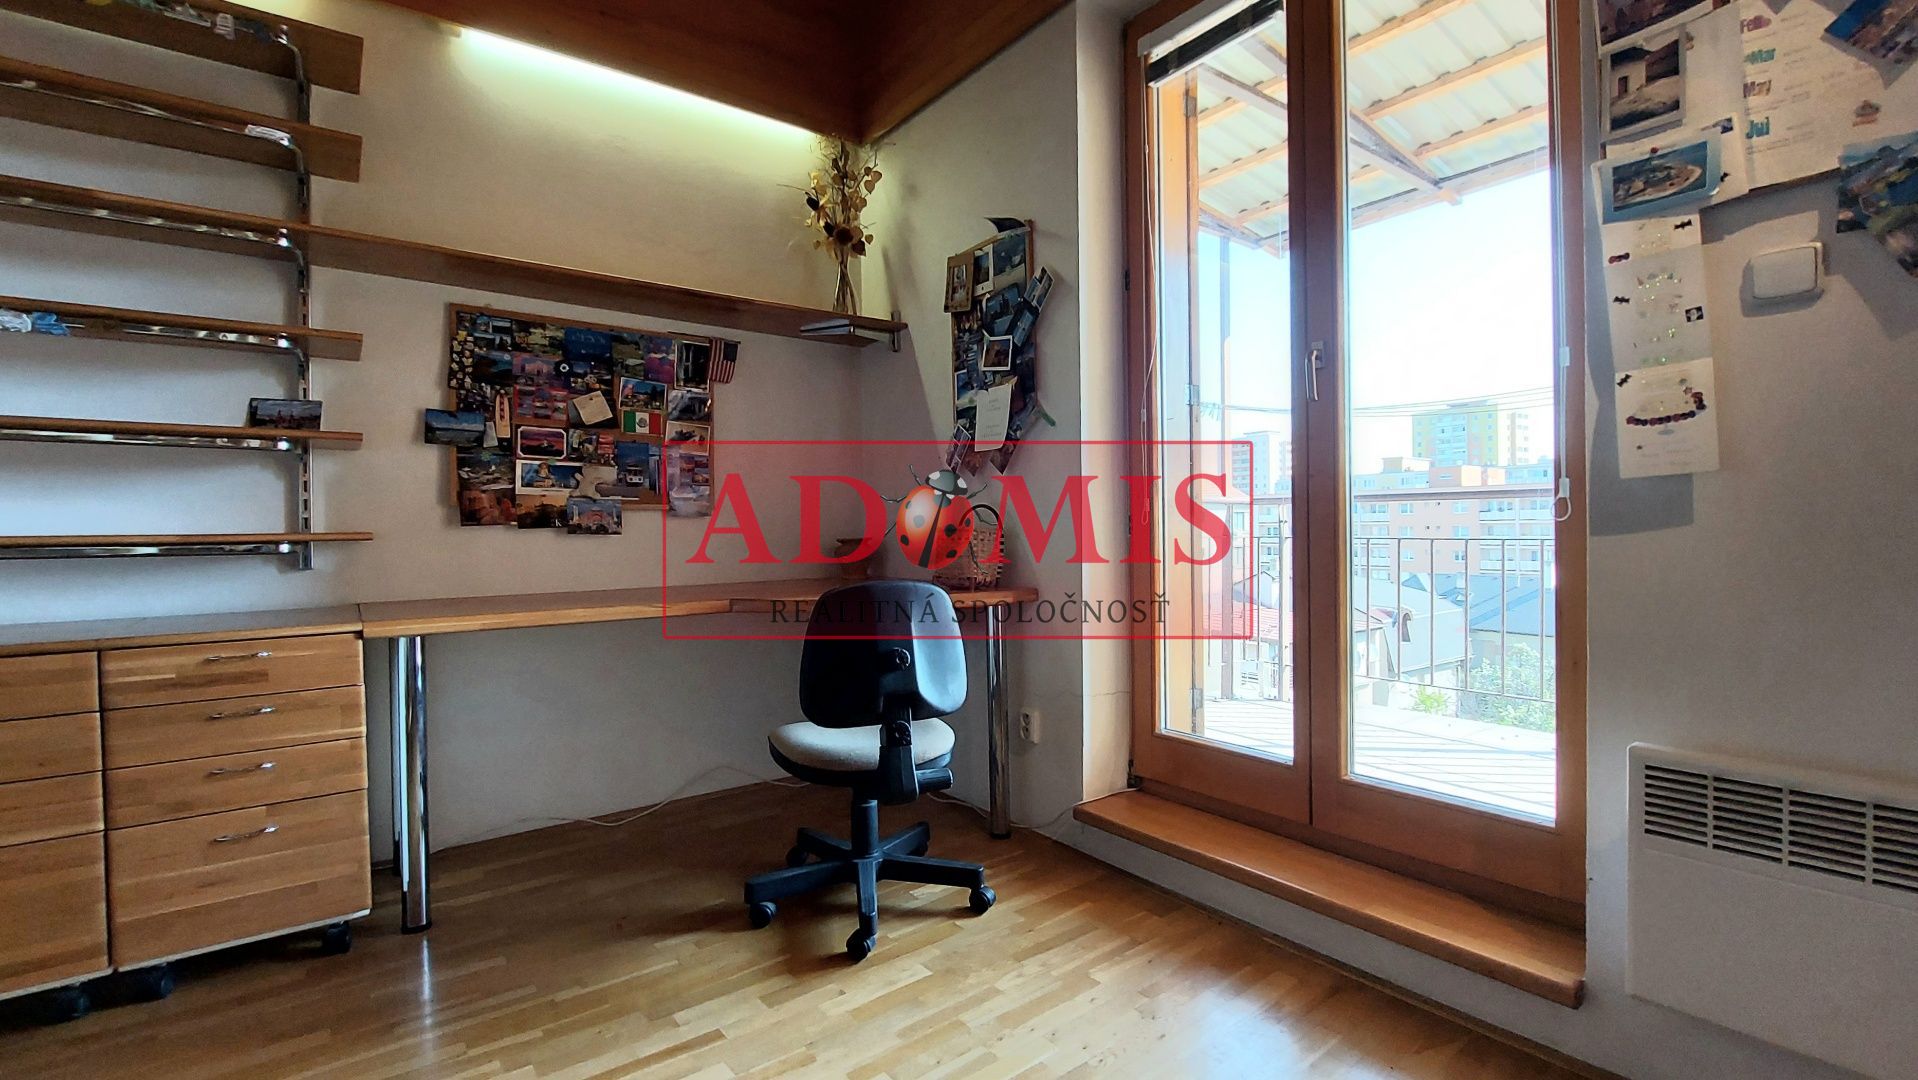 ADOMIS -  predáme 5-izb. byt,3-podlažný(mezonet),dvojgaráž,uzamknuté parkovanie,2x kúpelňa,2x balkón,TOP lokalita, Brezová ulica, Košice.